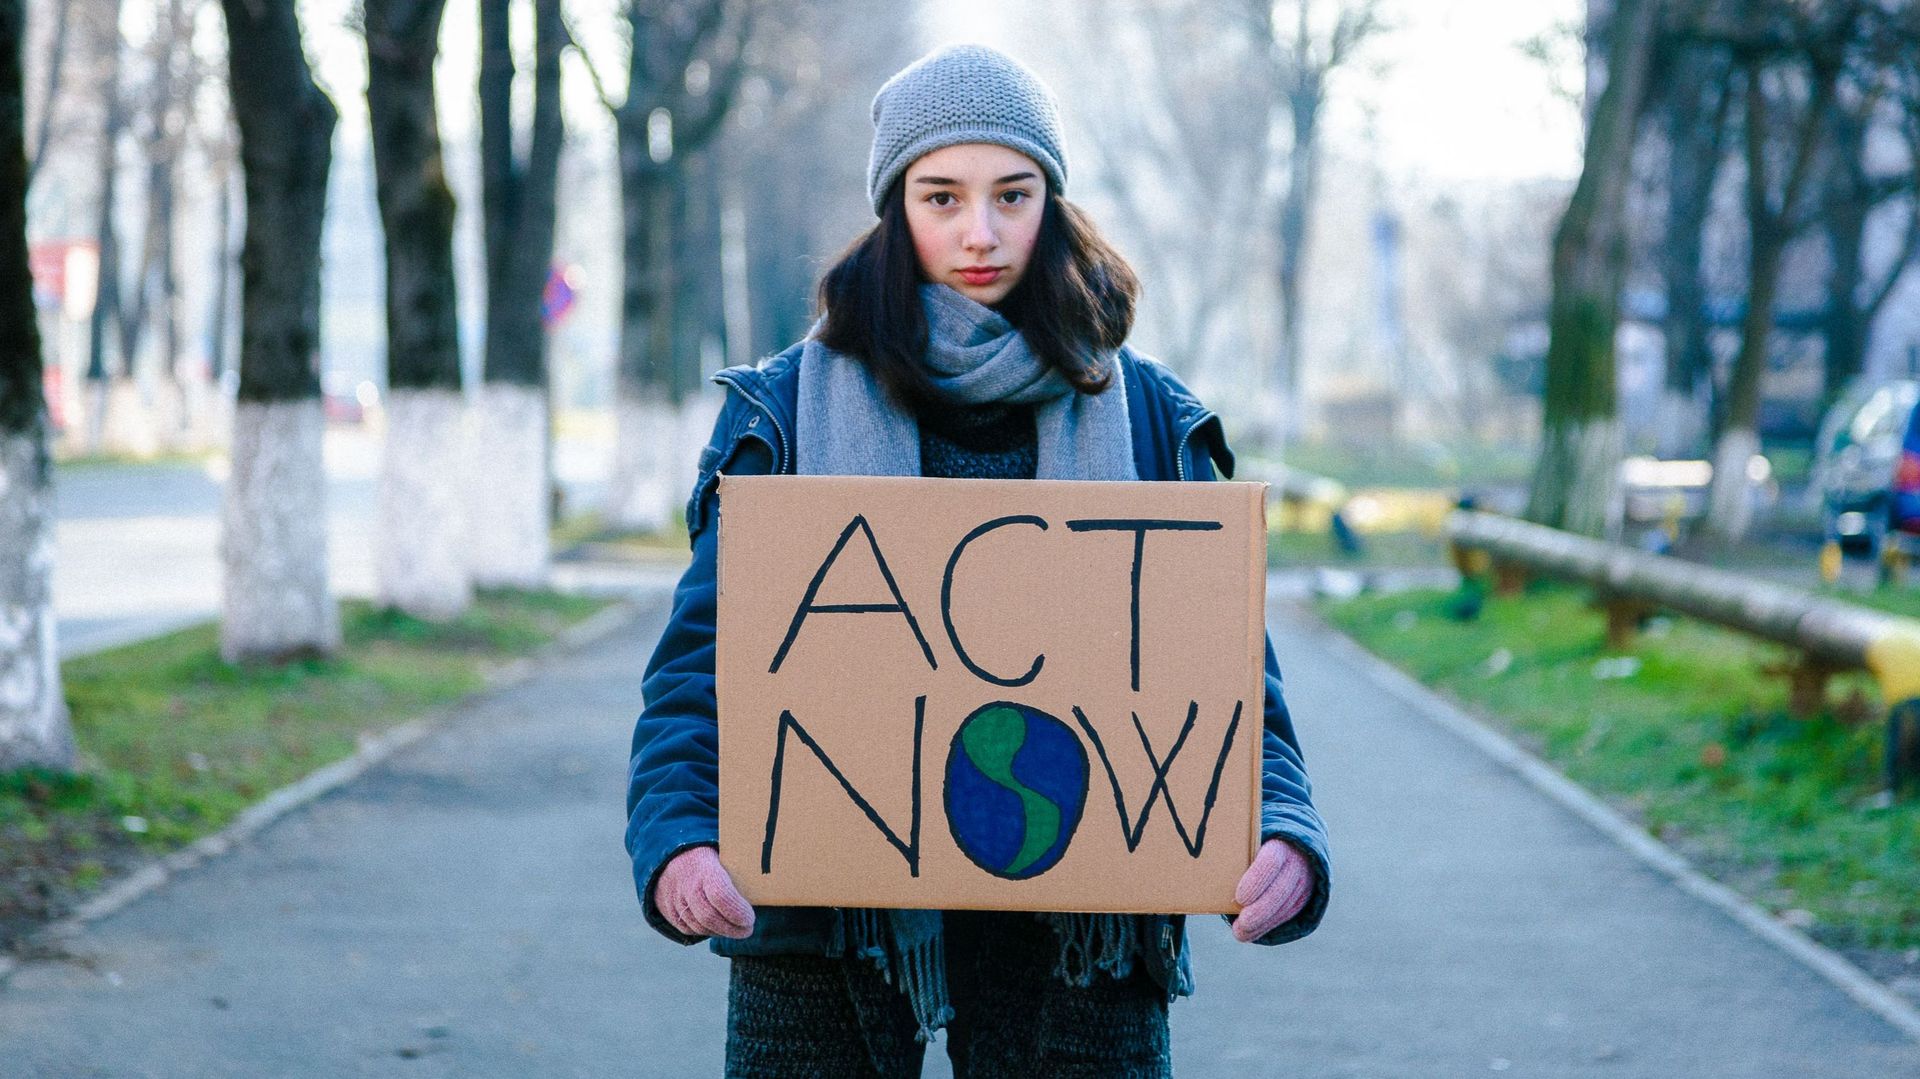 Un jeune activiste tient une pancarte pour protester contre le changement climatique. Image d’illustration.